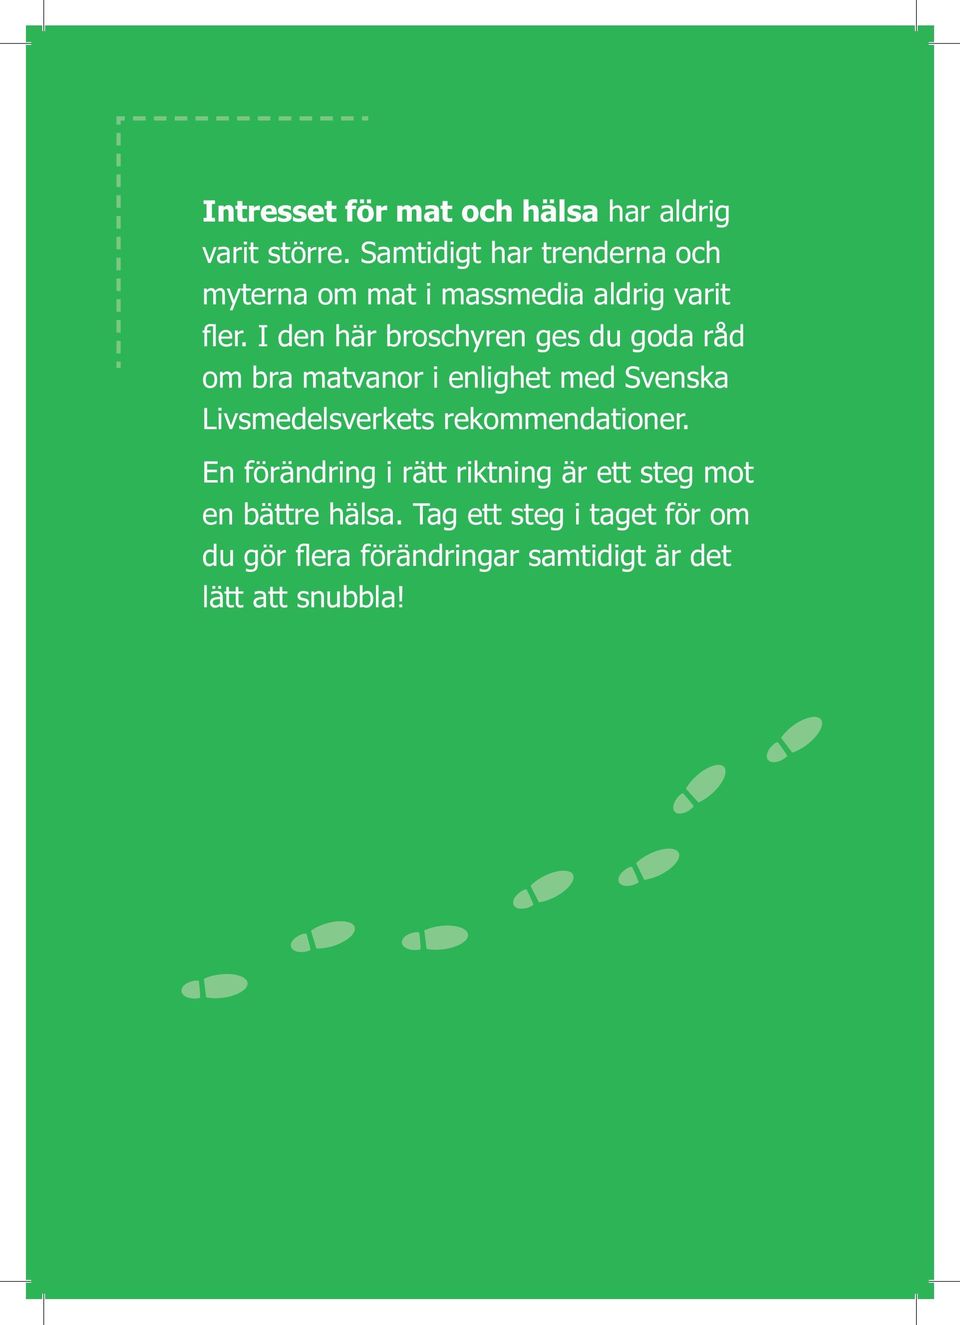 I den här broschyren ges du goda råd om bra matvanor i enlighet med Svenska Livsmedelsverkets